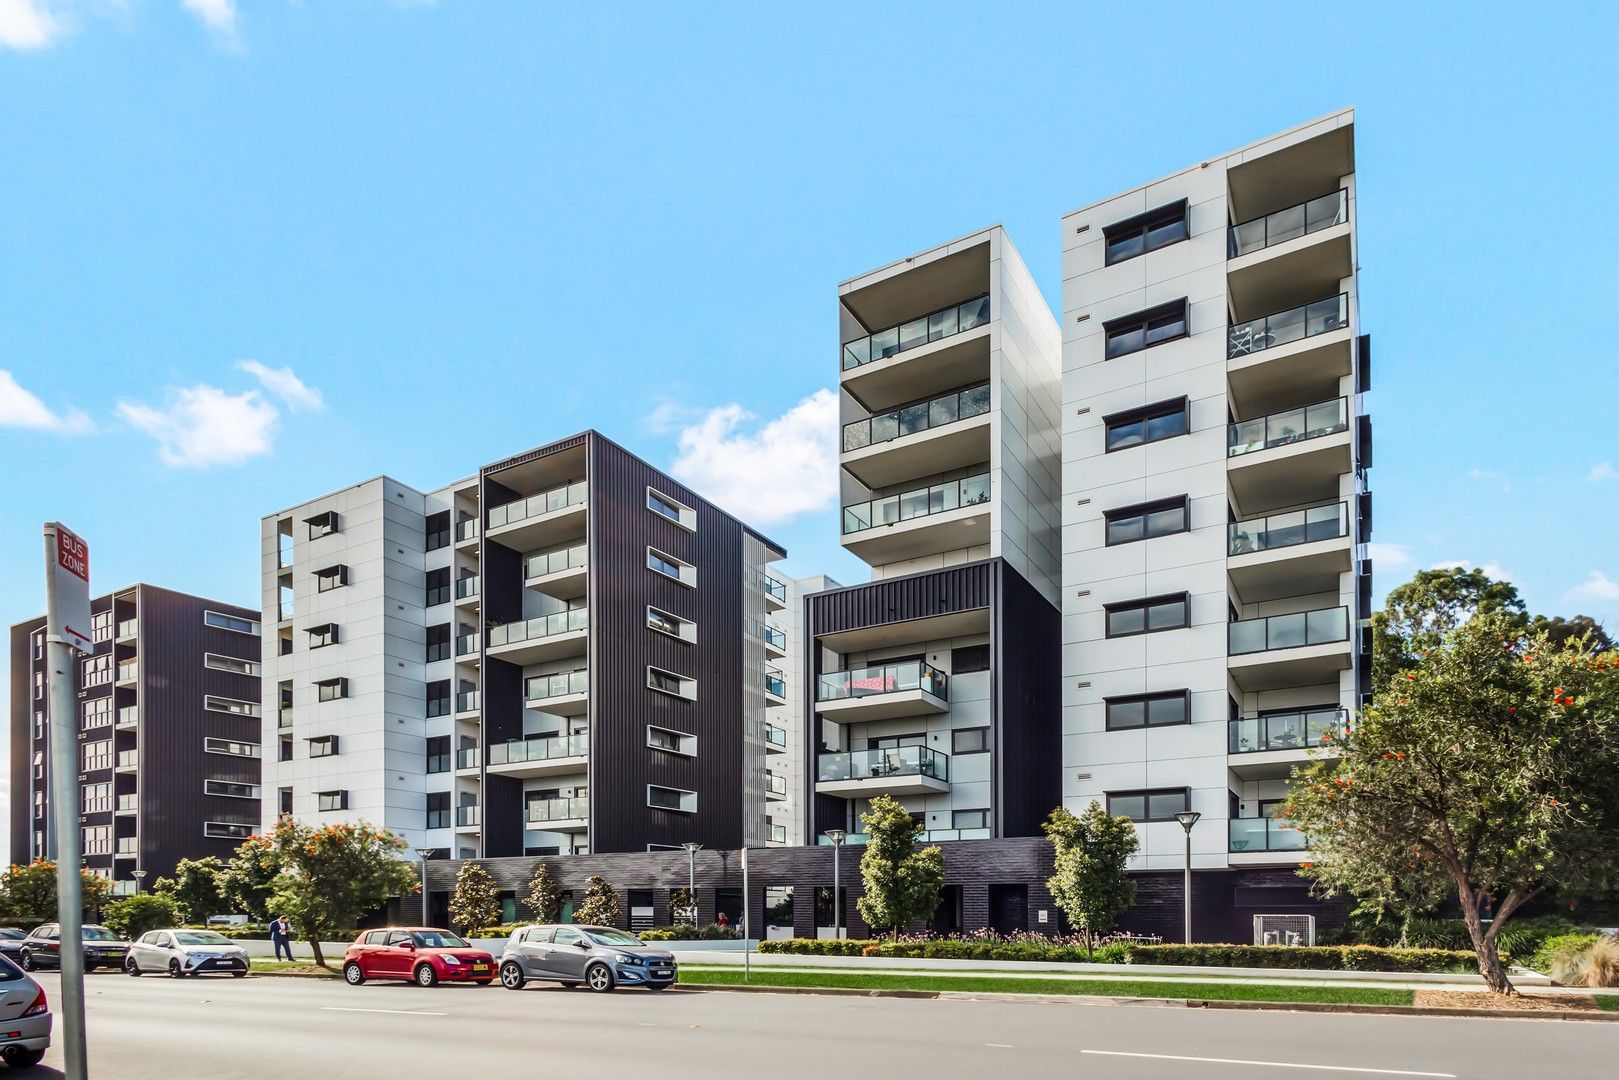 2 bedrooms Apartment / Unit / Flat in 318/21C Durham Street MOUNT DRUITT NSW, 2770